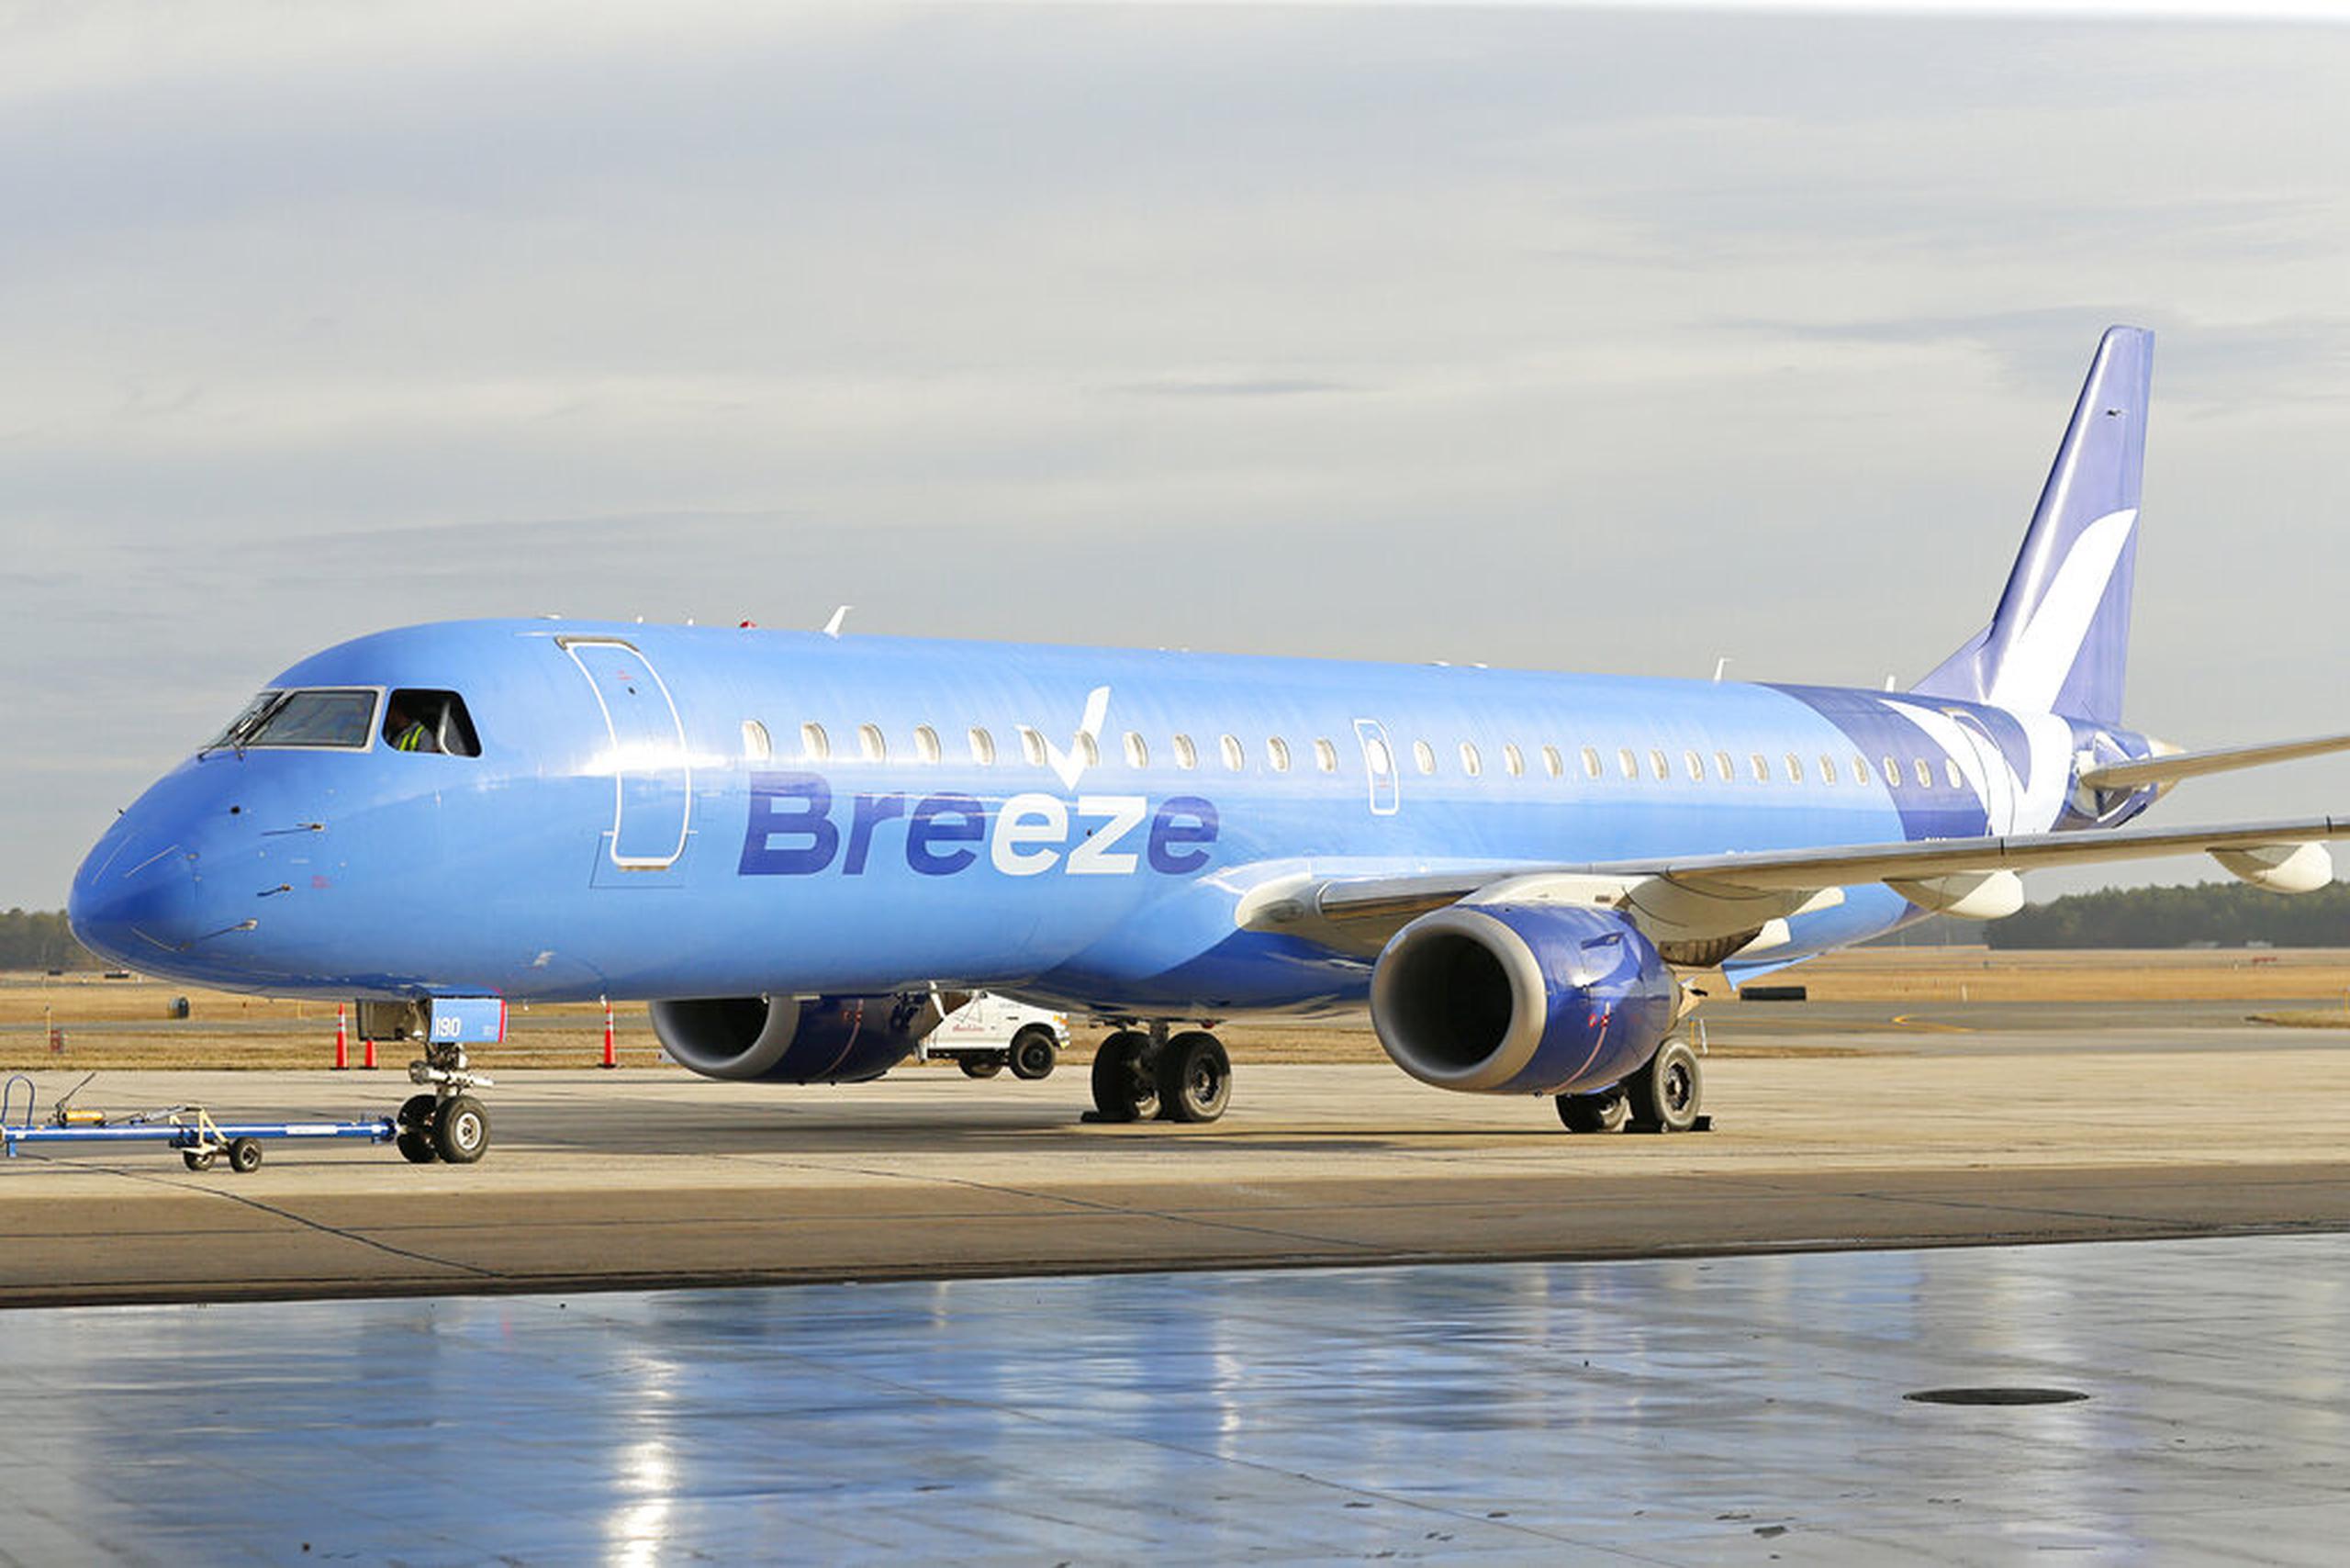 Breeze no ha detallado dónde iniciará sus operaciones, aunque ha insinuado que será en el sureste de Estados Unidos, incluyendo Florida, un destino popular para viajes de placer.